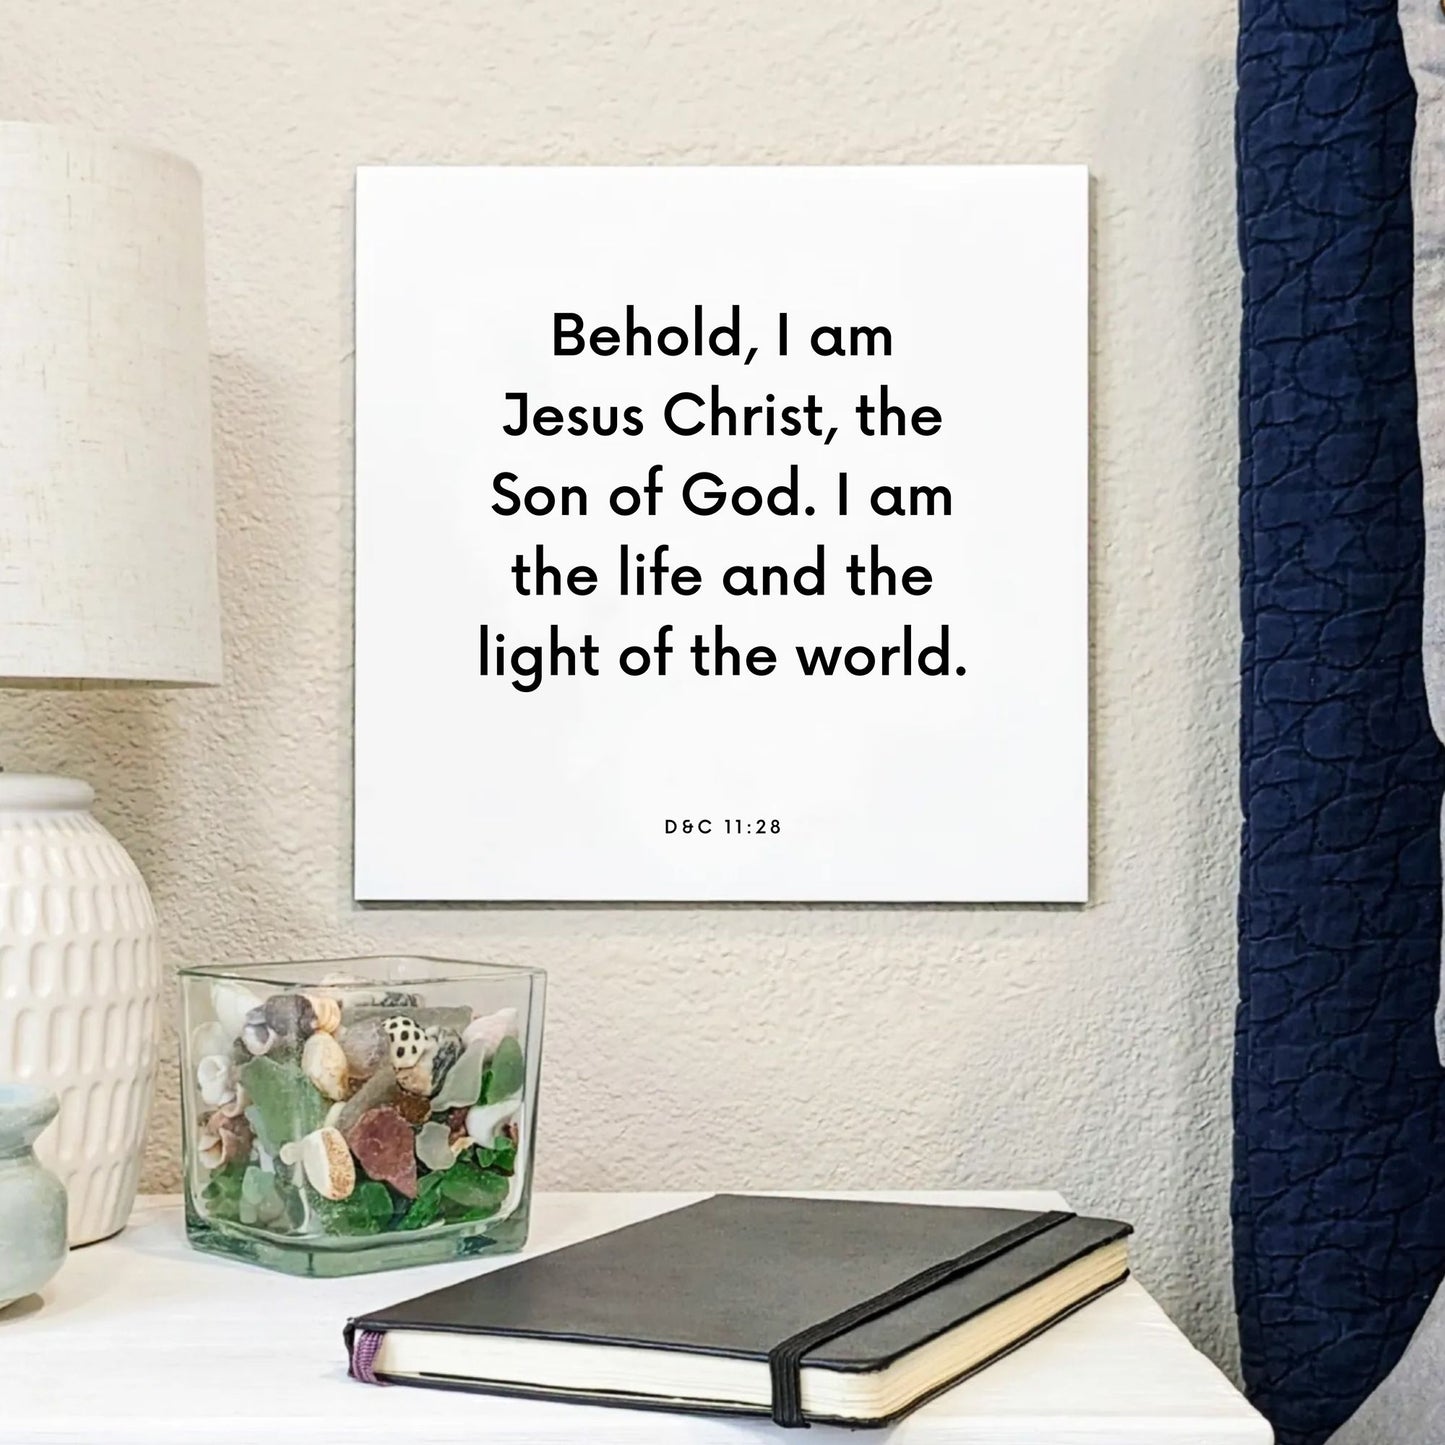 Bedside mouting of the scripture tile for D&C 11:28 - "Behold, I am Jesus Christ, the Son of God"